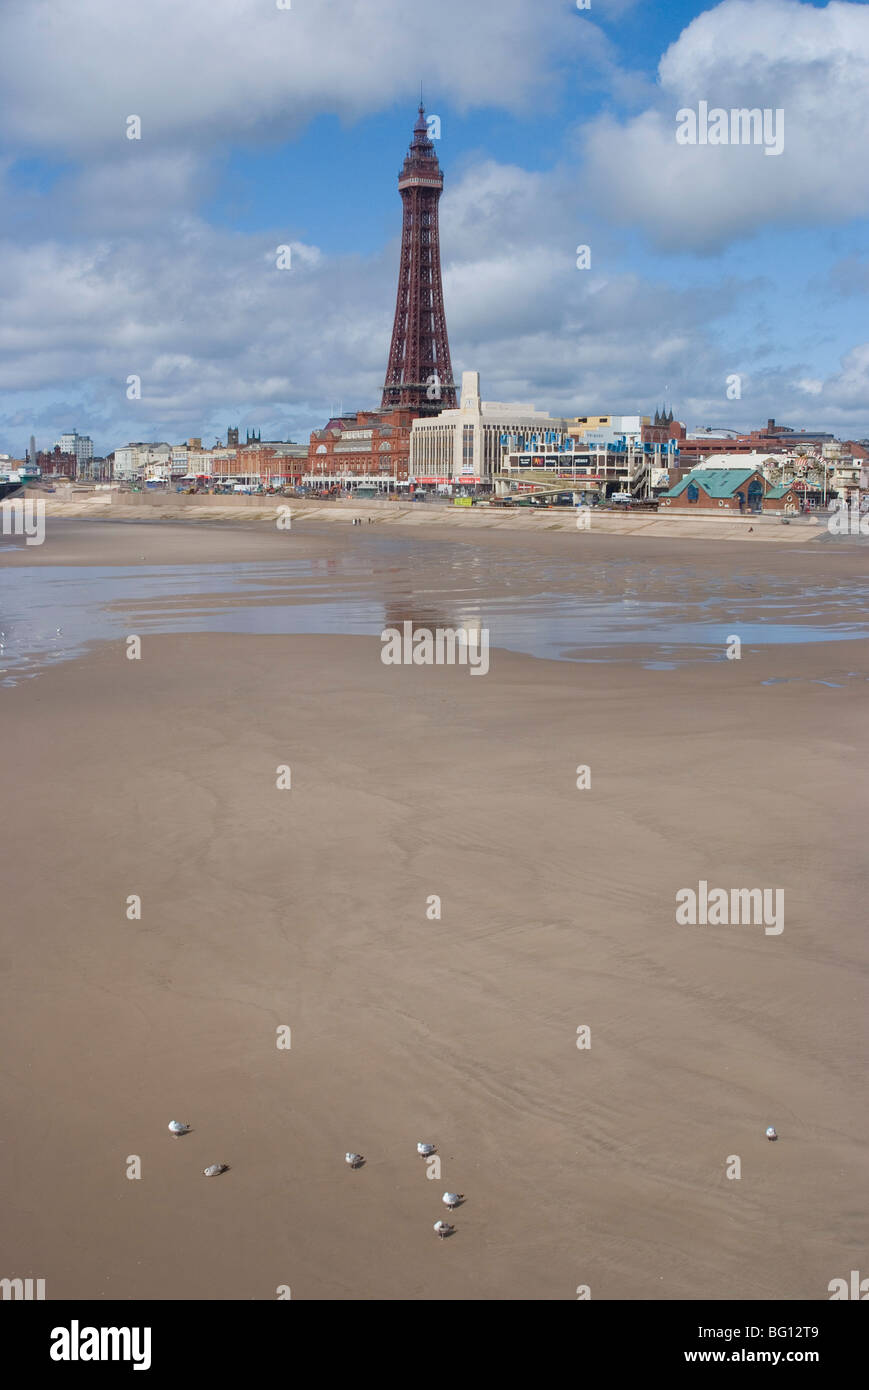 Donnant sur la plage et de la tour de Blackpool Central Pier, Blackpool, Lancashire, Angleterre, Royaume-Uni, Europe Banque D'Images